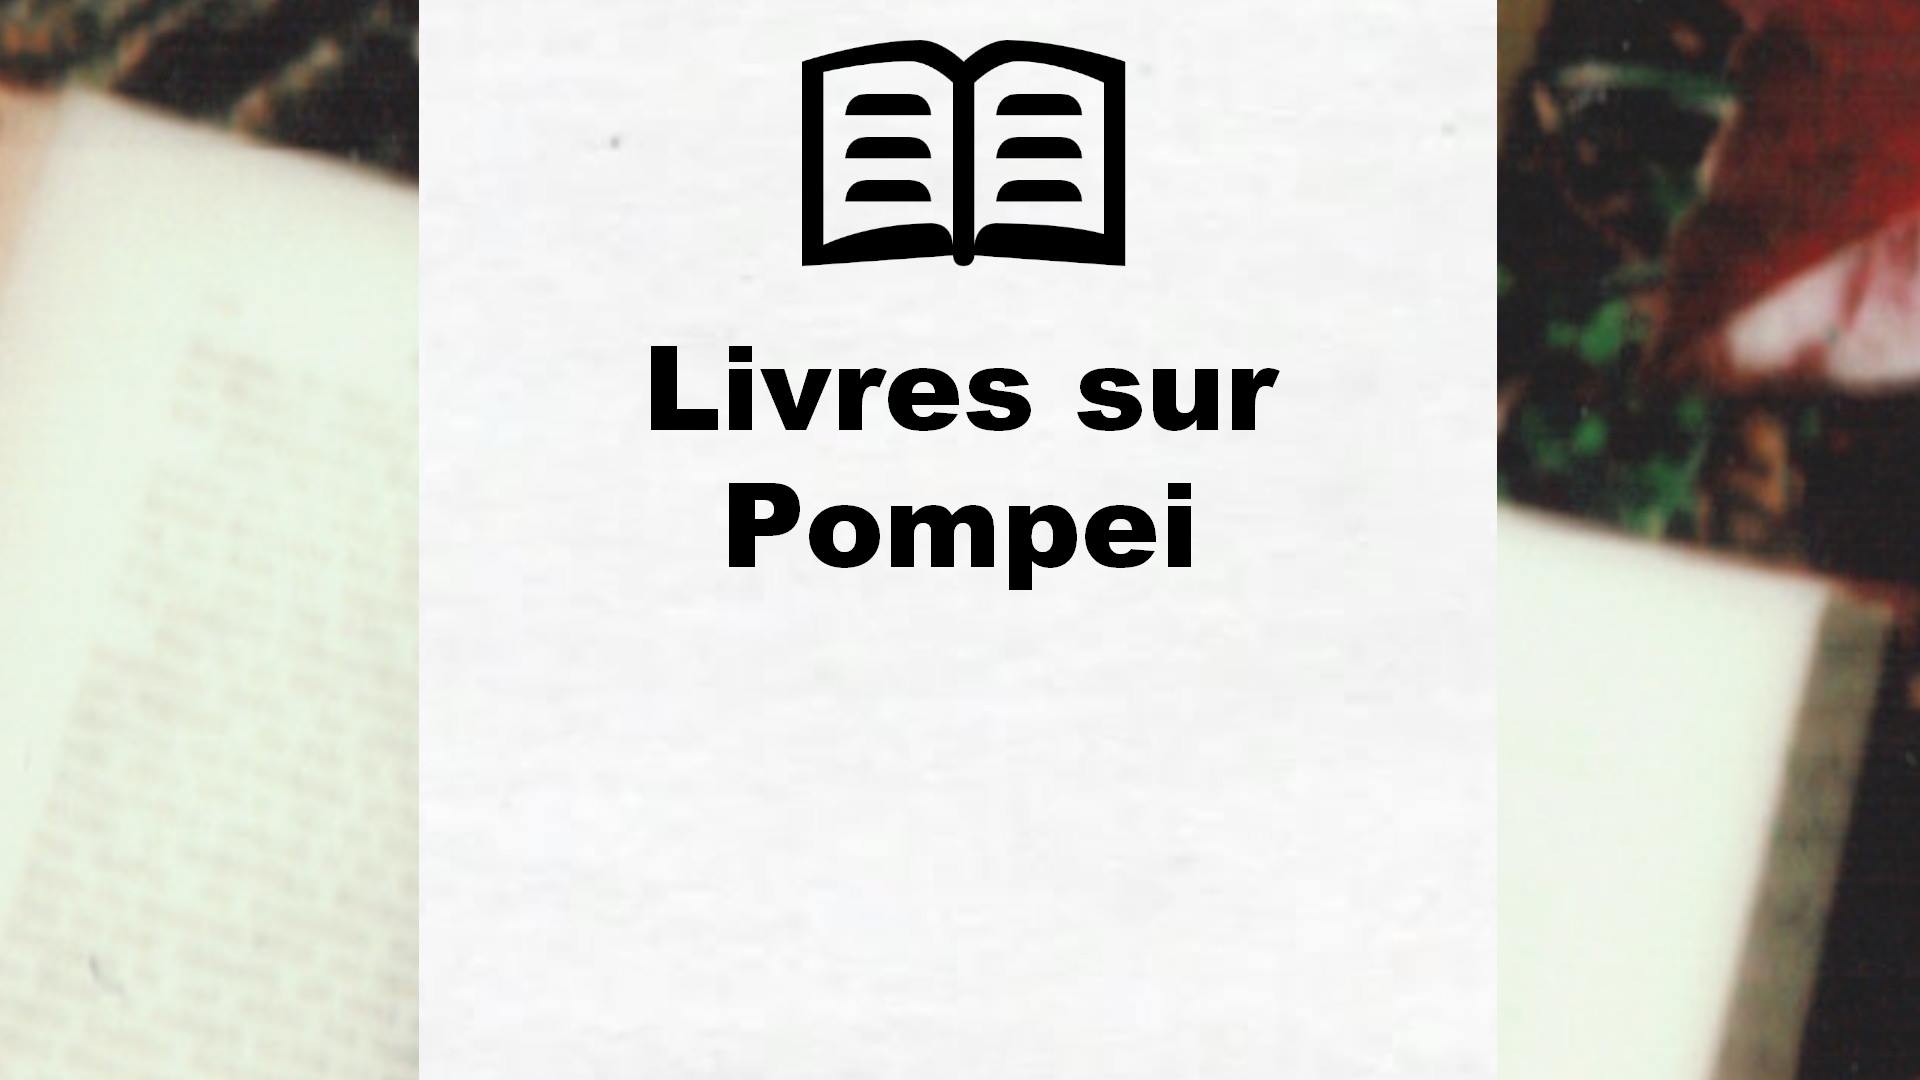 Livres sur Pompei